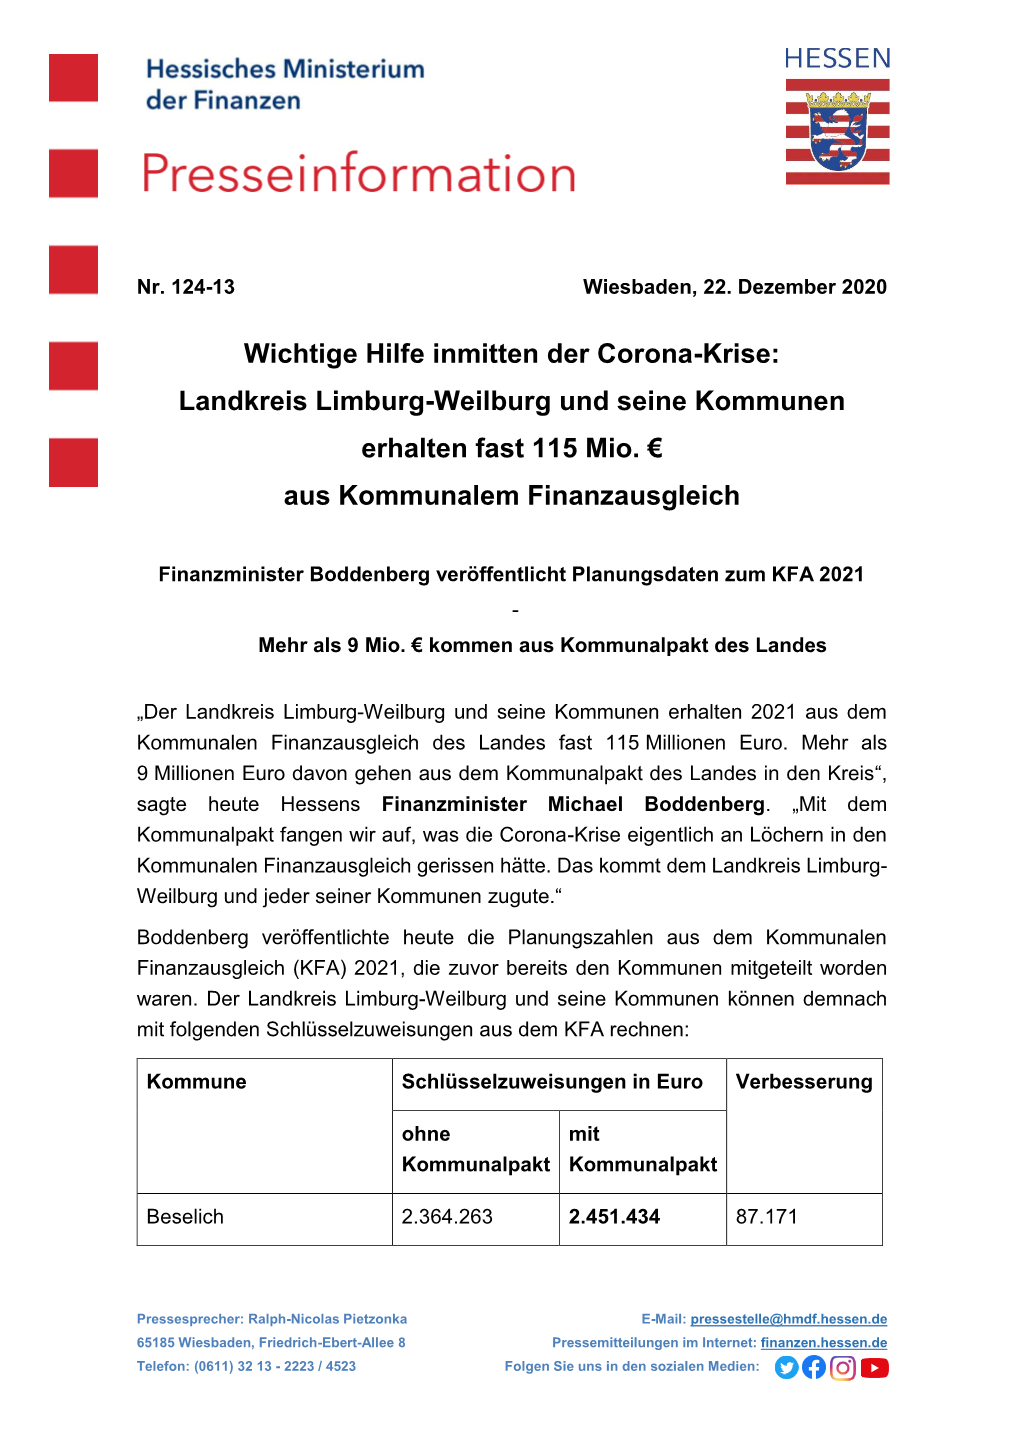 Wichtige Hilfe Inmitten Der Corona-Krise: Landkreis Limburg-Weilburg Und Seine Kommunen Erhalten Fast 115 Mio